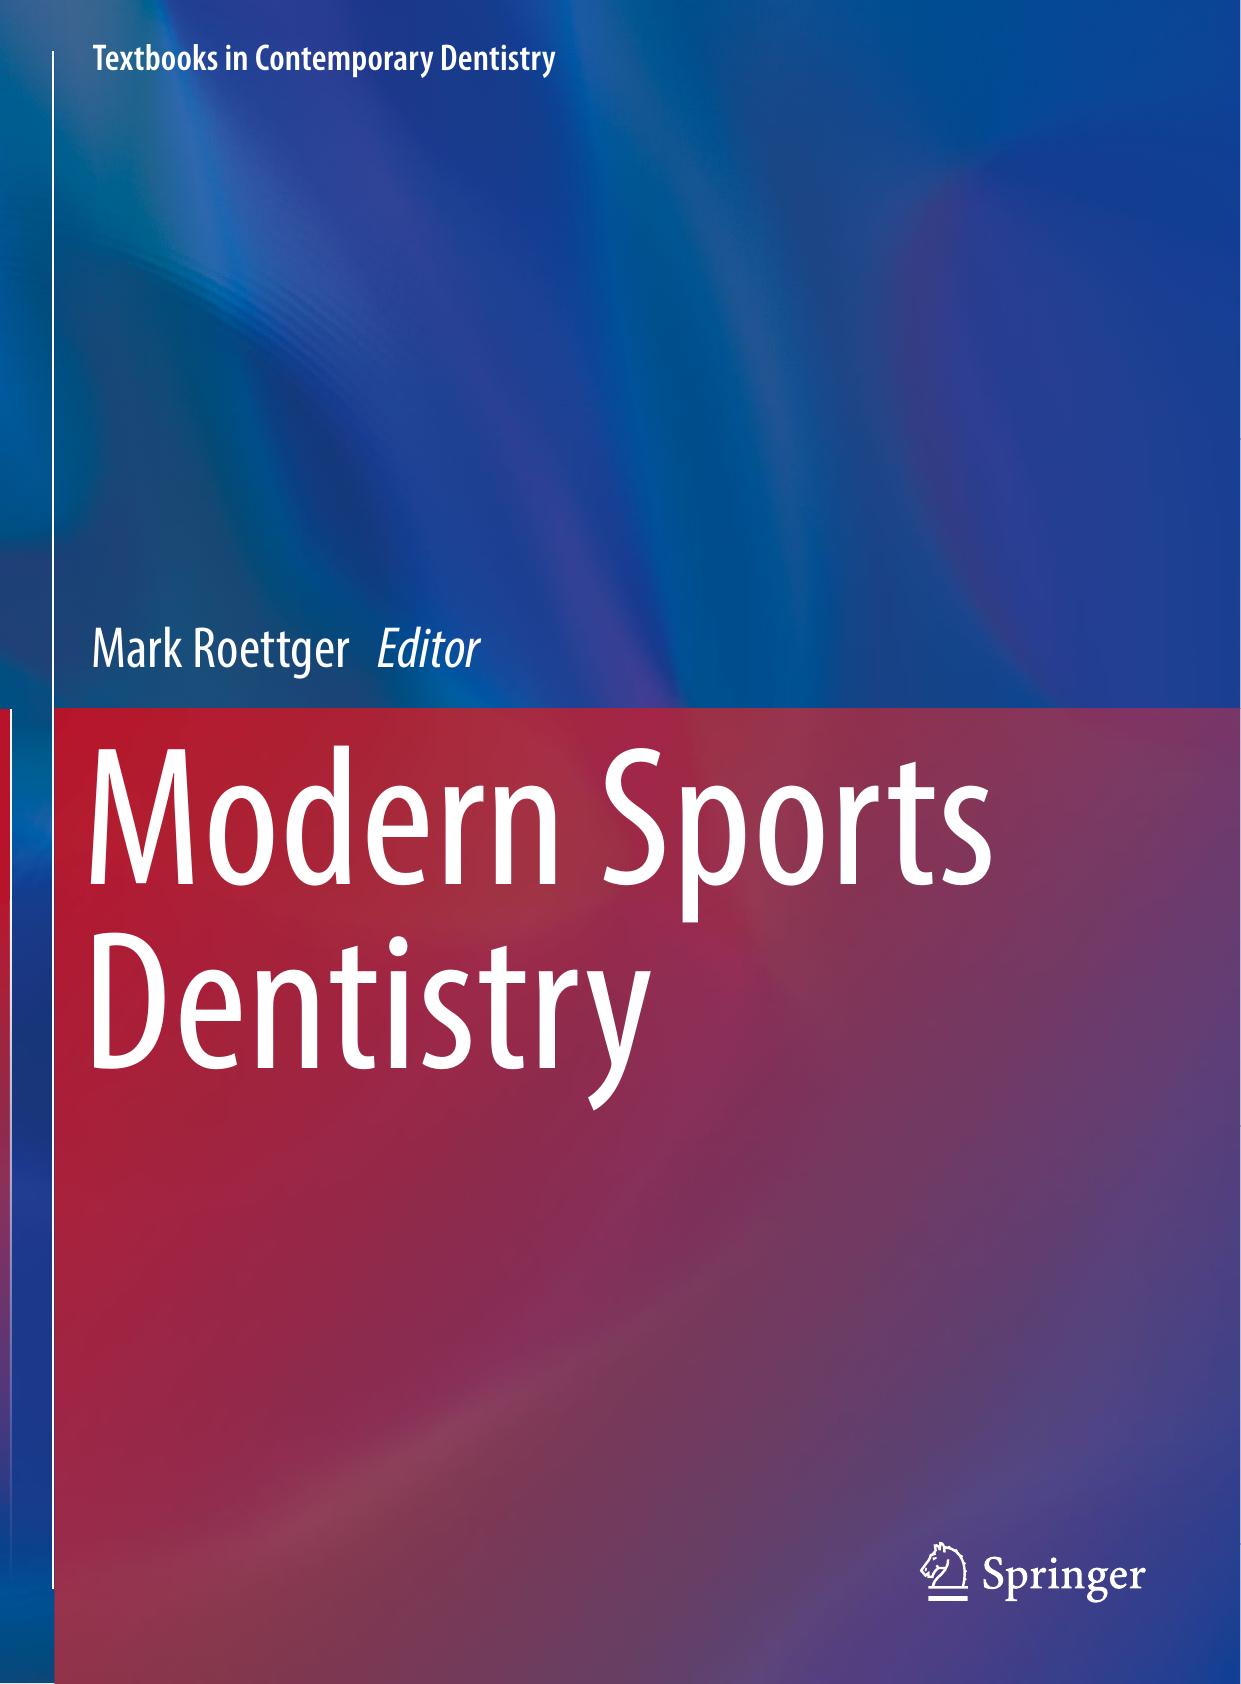 Modern Sports Dentistry 2018